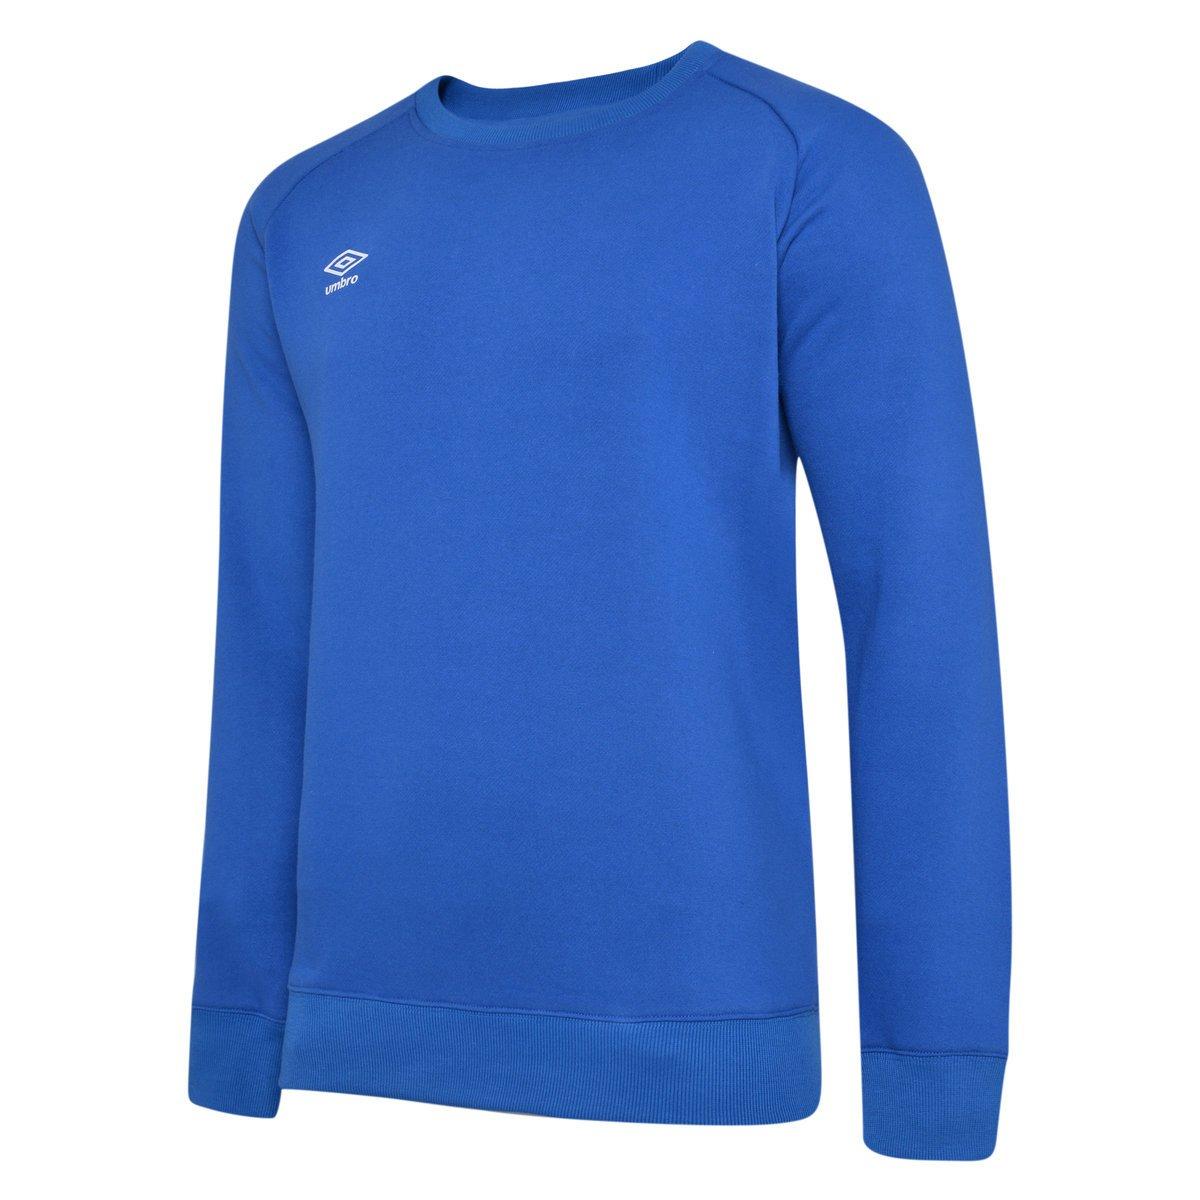 Club Leisure Sweatshirt Mädchen Blau 128 von Umbro